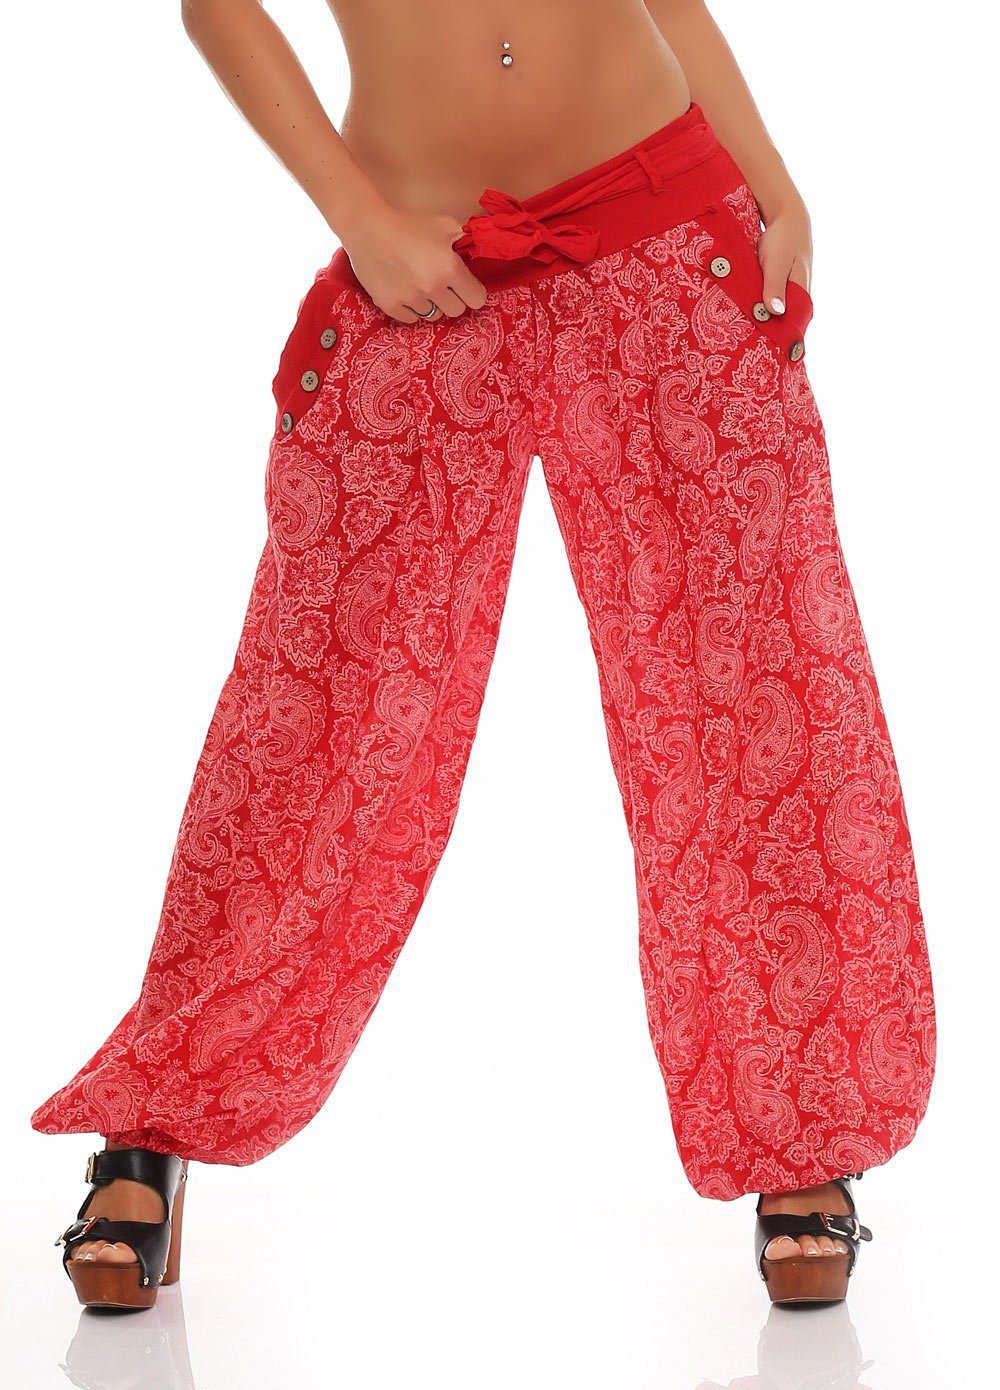 malito more than fashion Haremshose 3488 Aladinhose im Orient Print mit elastischem Bund Einheitsgröße rot